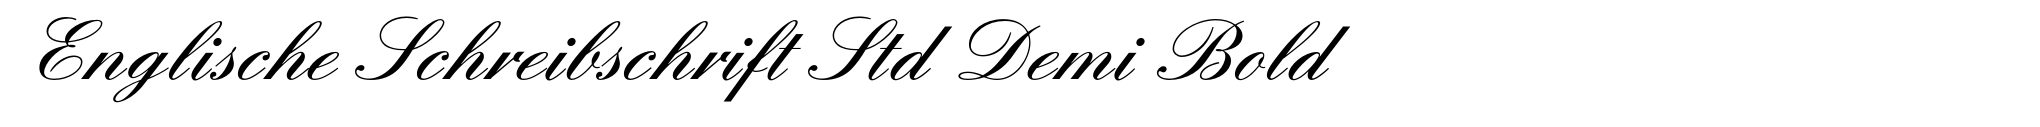 Englische Schreibschrift Std Demi Bold image